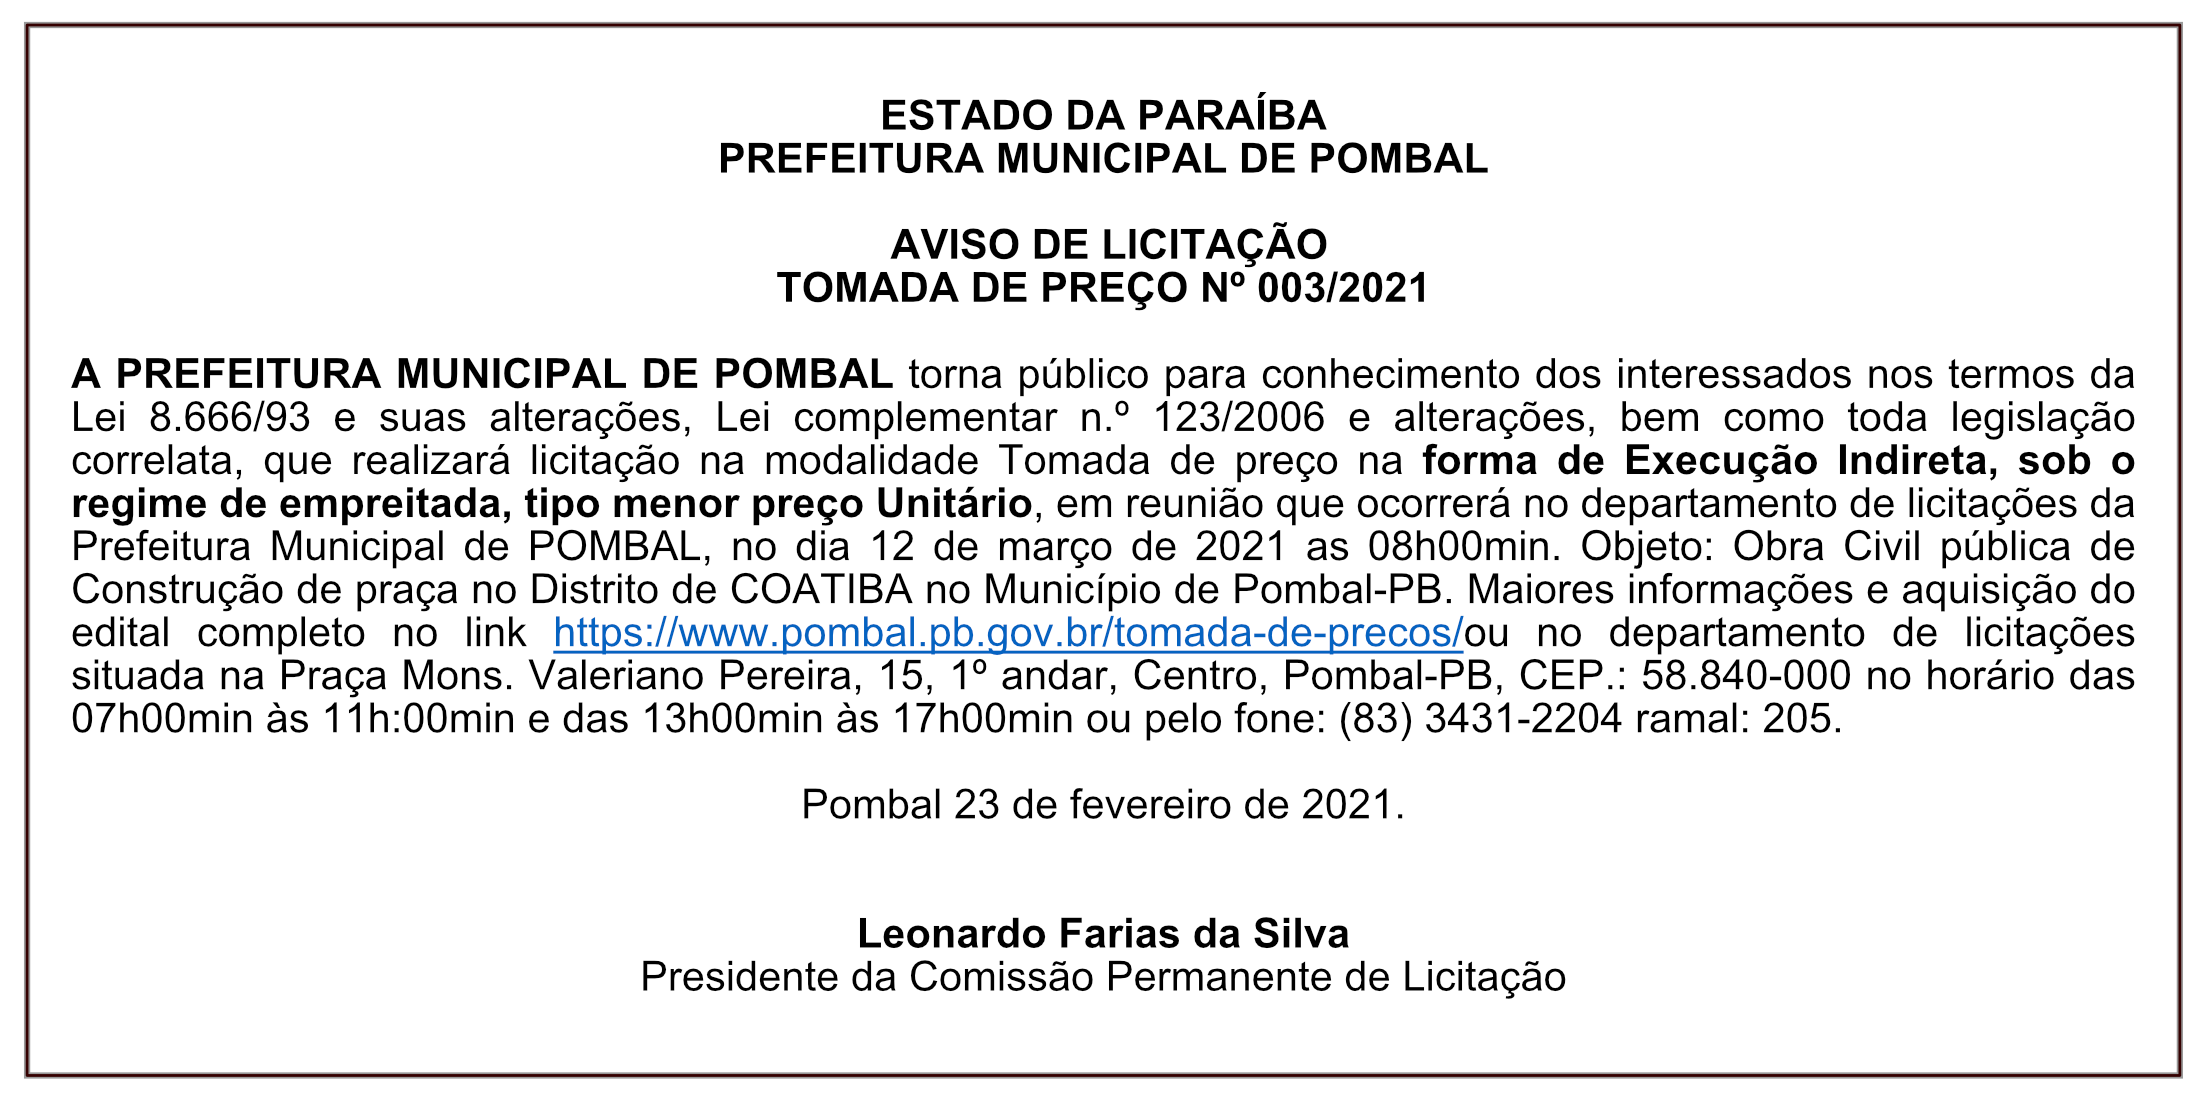 PREFEITURA MUNICIPAL DE POMBAL – AVISO DE LICITAÇÃO – TOMADA DE PREÇO Nº 003/2021